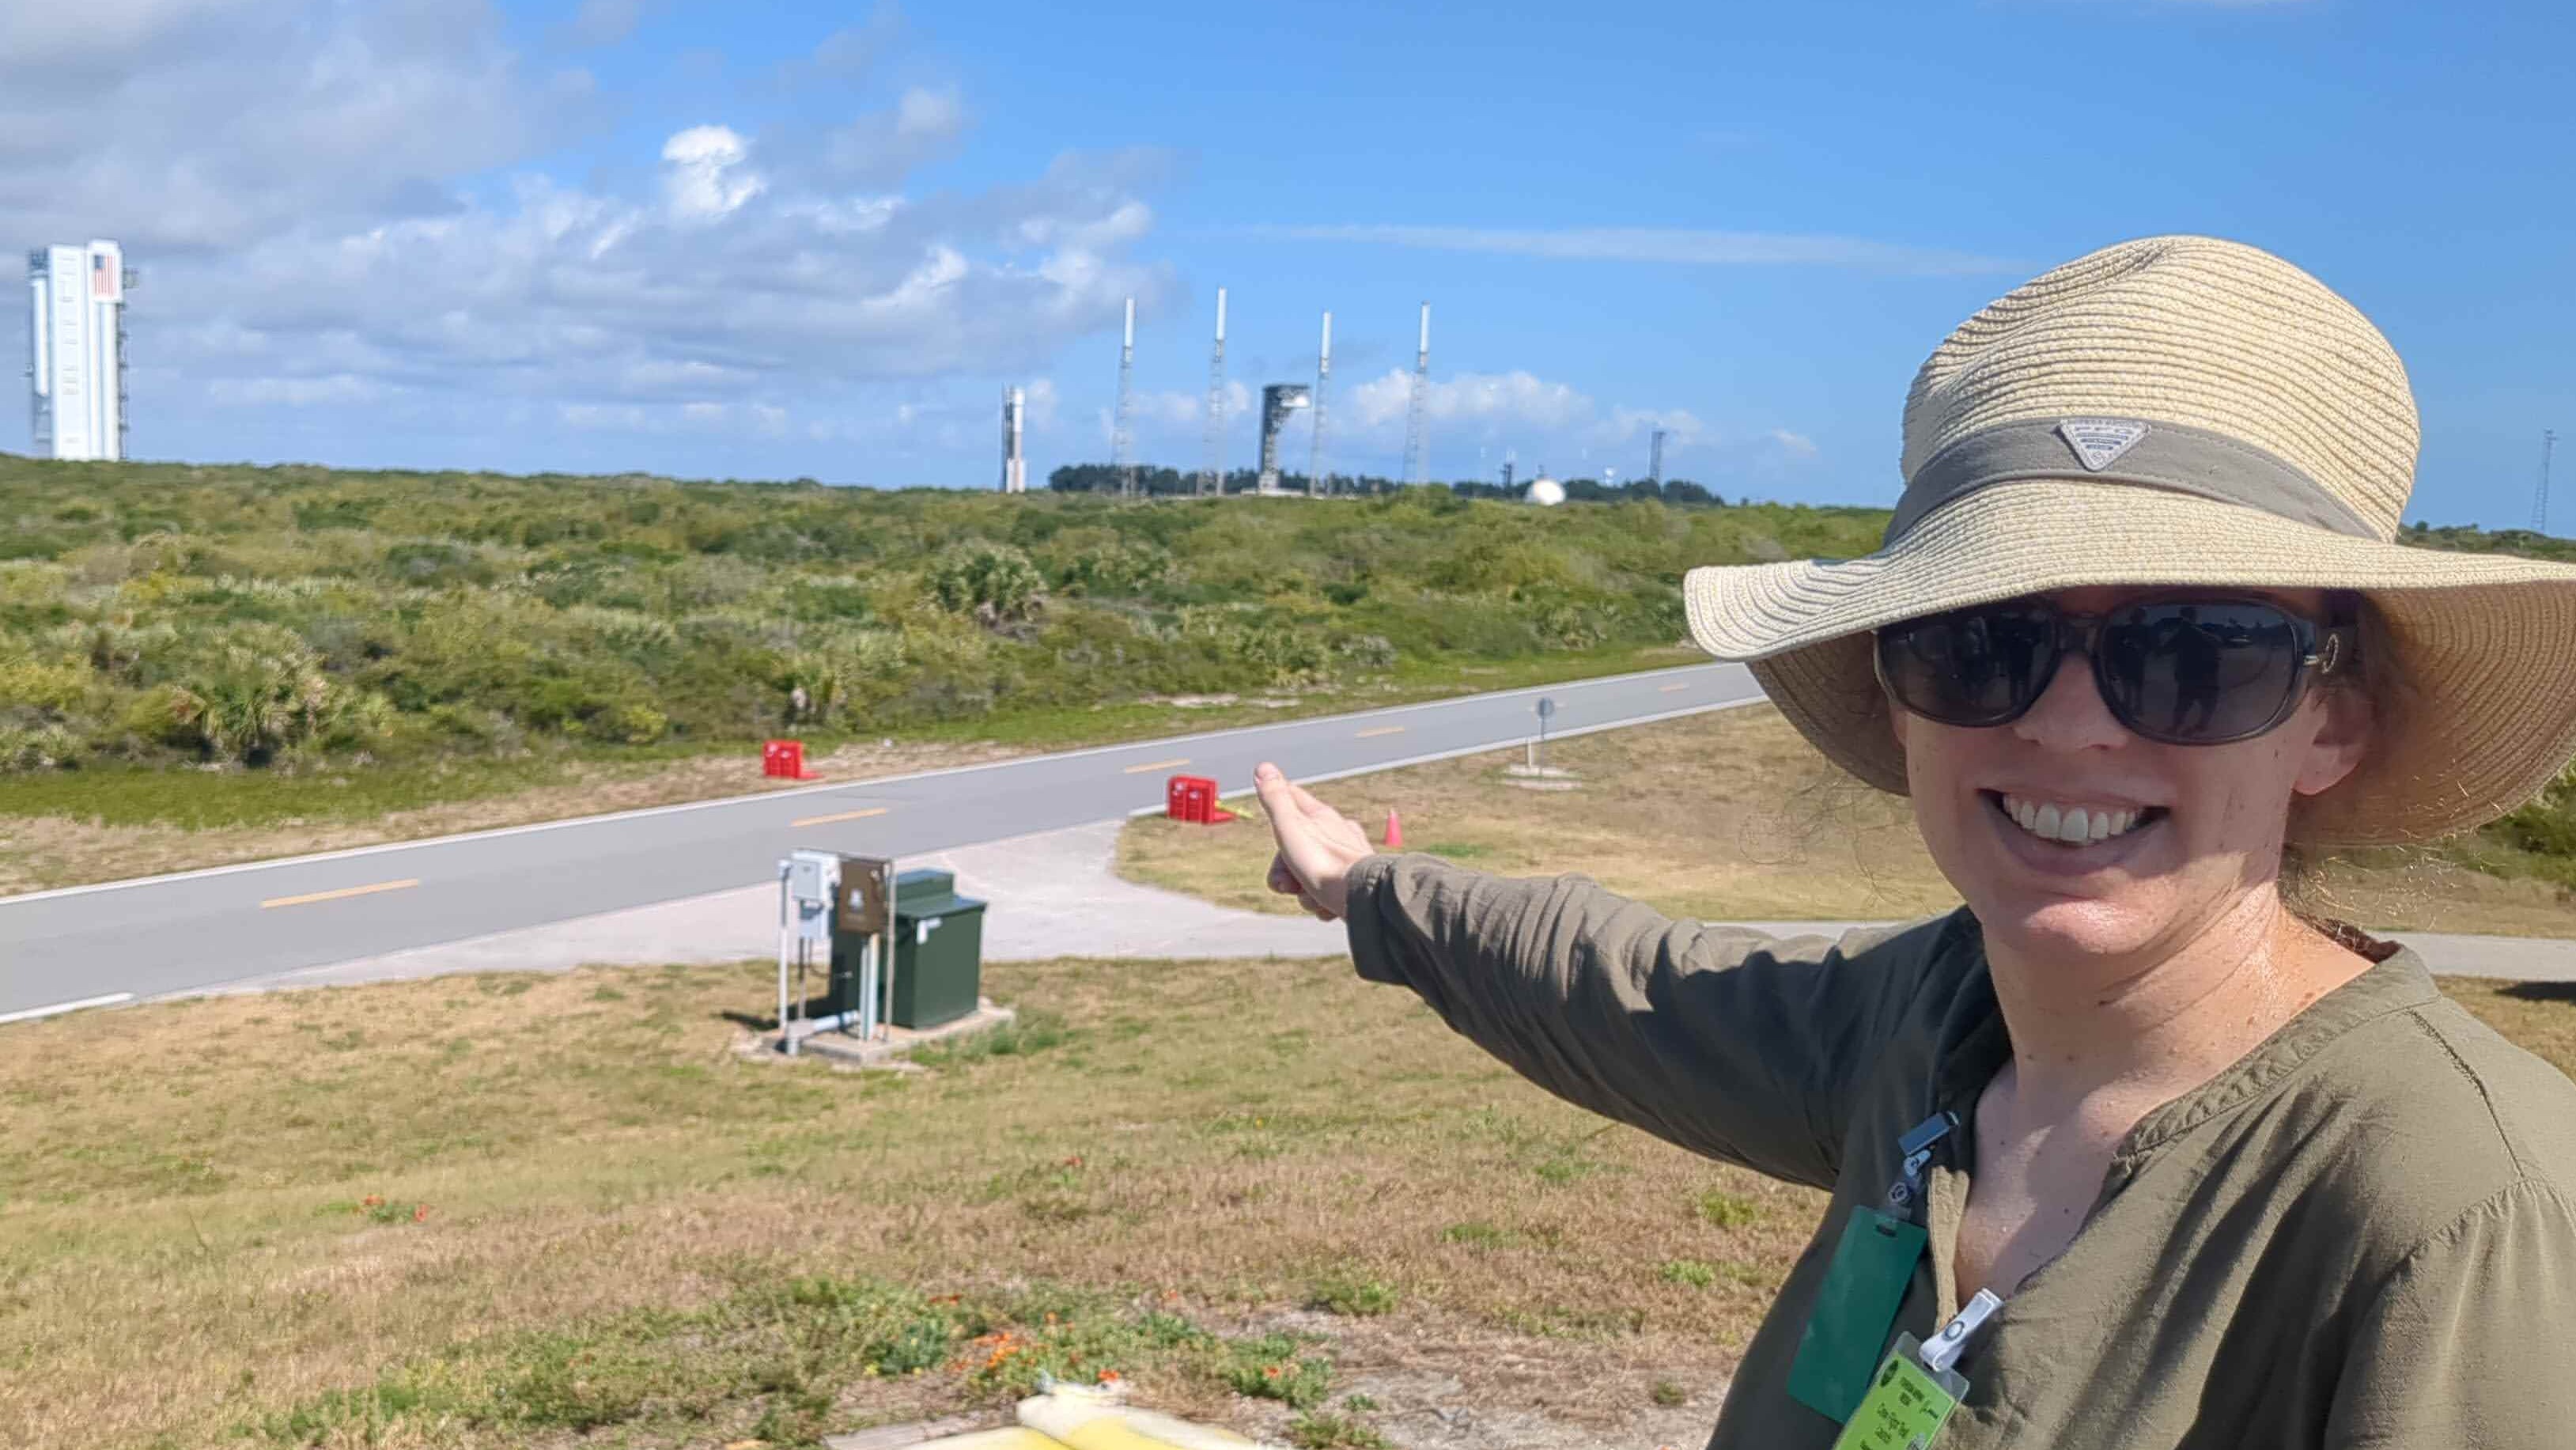 Wanita tersenyum mengenakan topi besar dan kacamata hitam.  Dia menunjuk ke seberang jalan pada sebuah roket dan landasan peluncuran di kejauhan sebagai latar belakang